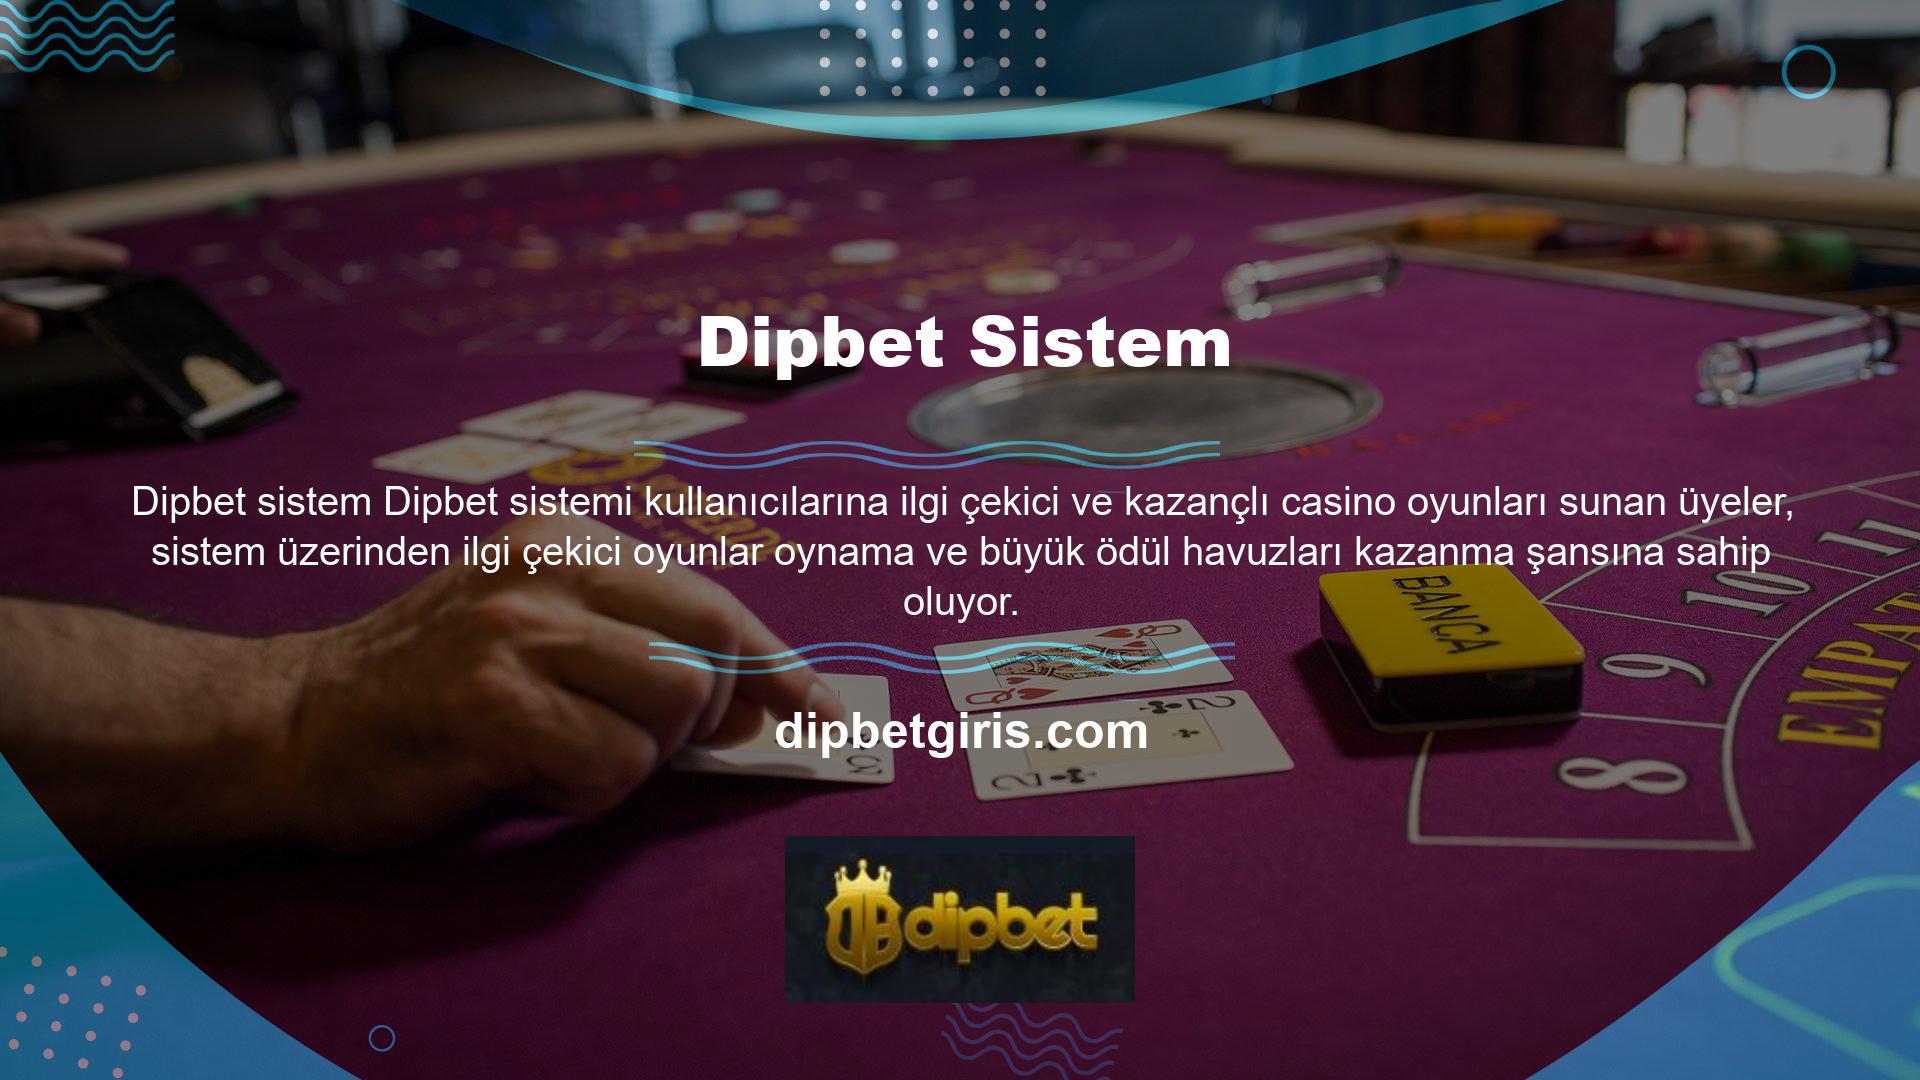 Dipbet Casino platformu aracılığıyla üyeler slot, poker, rulet, blackjack, bingo ve Türk pokeri gibi çeşitli oyunları oynayabilirler